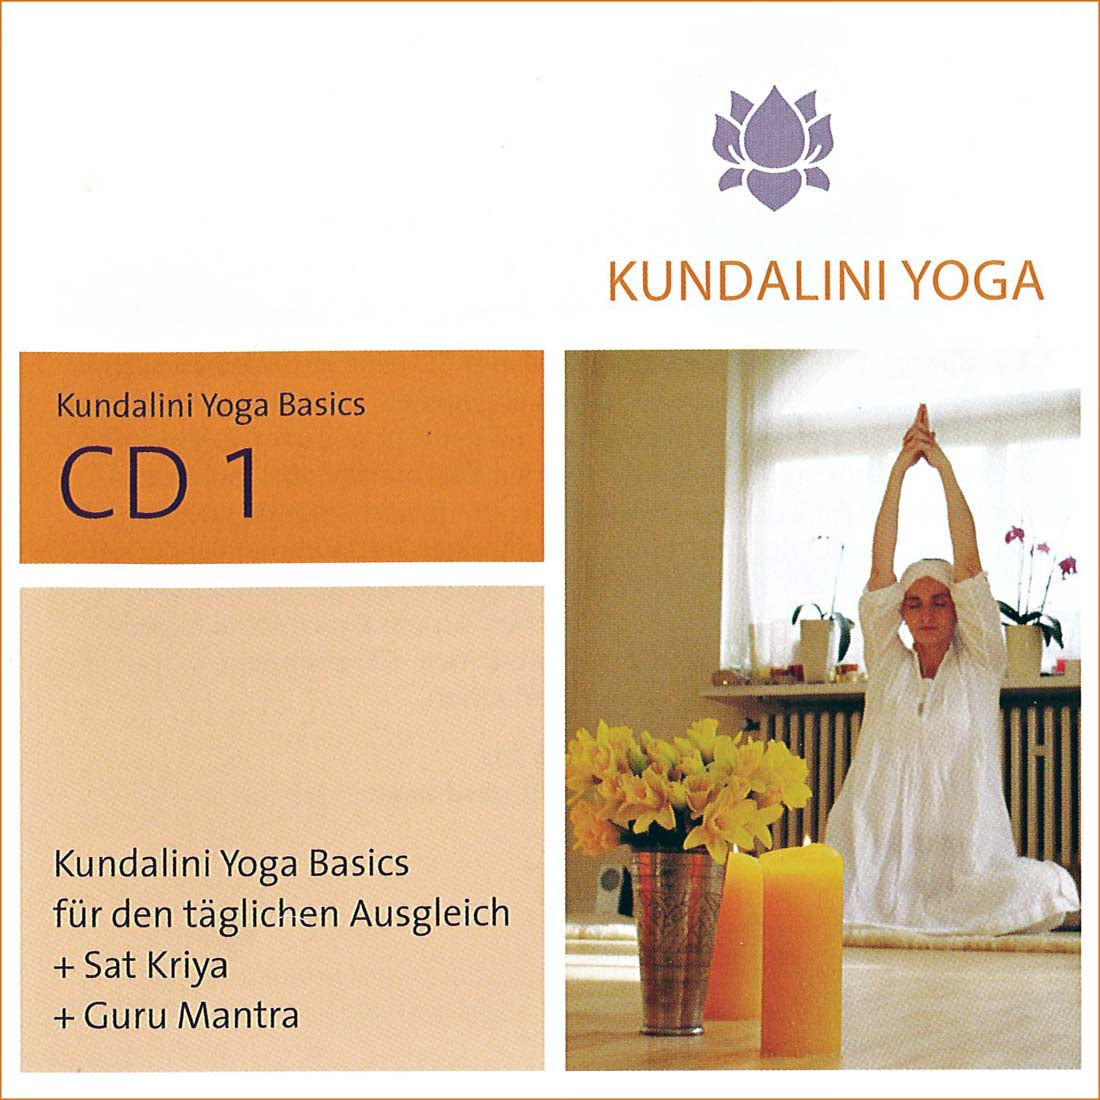 Kundalini Yoga Basics CD 1 - Gurmeet Kaur complete